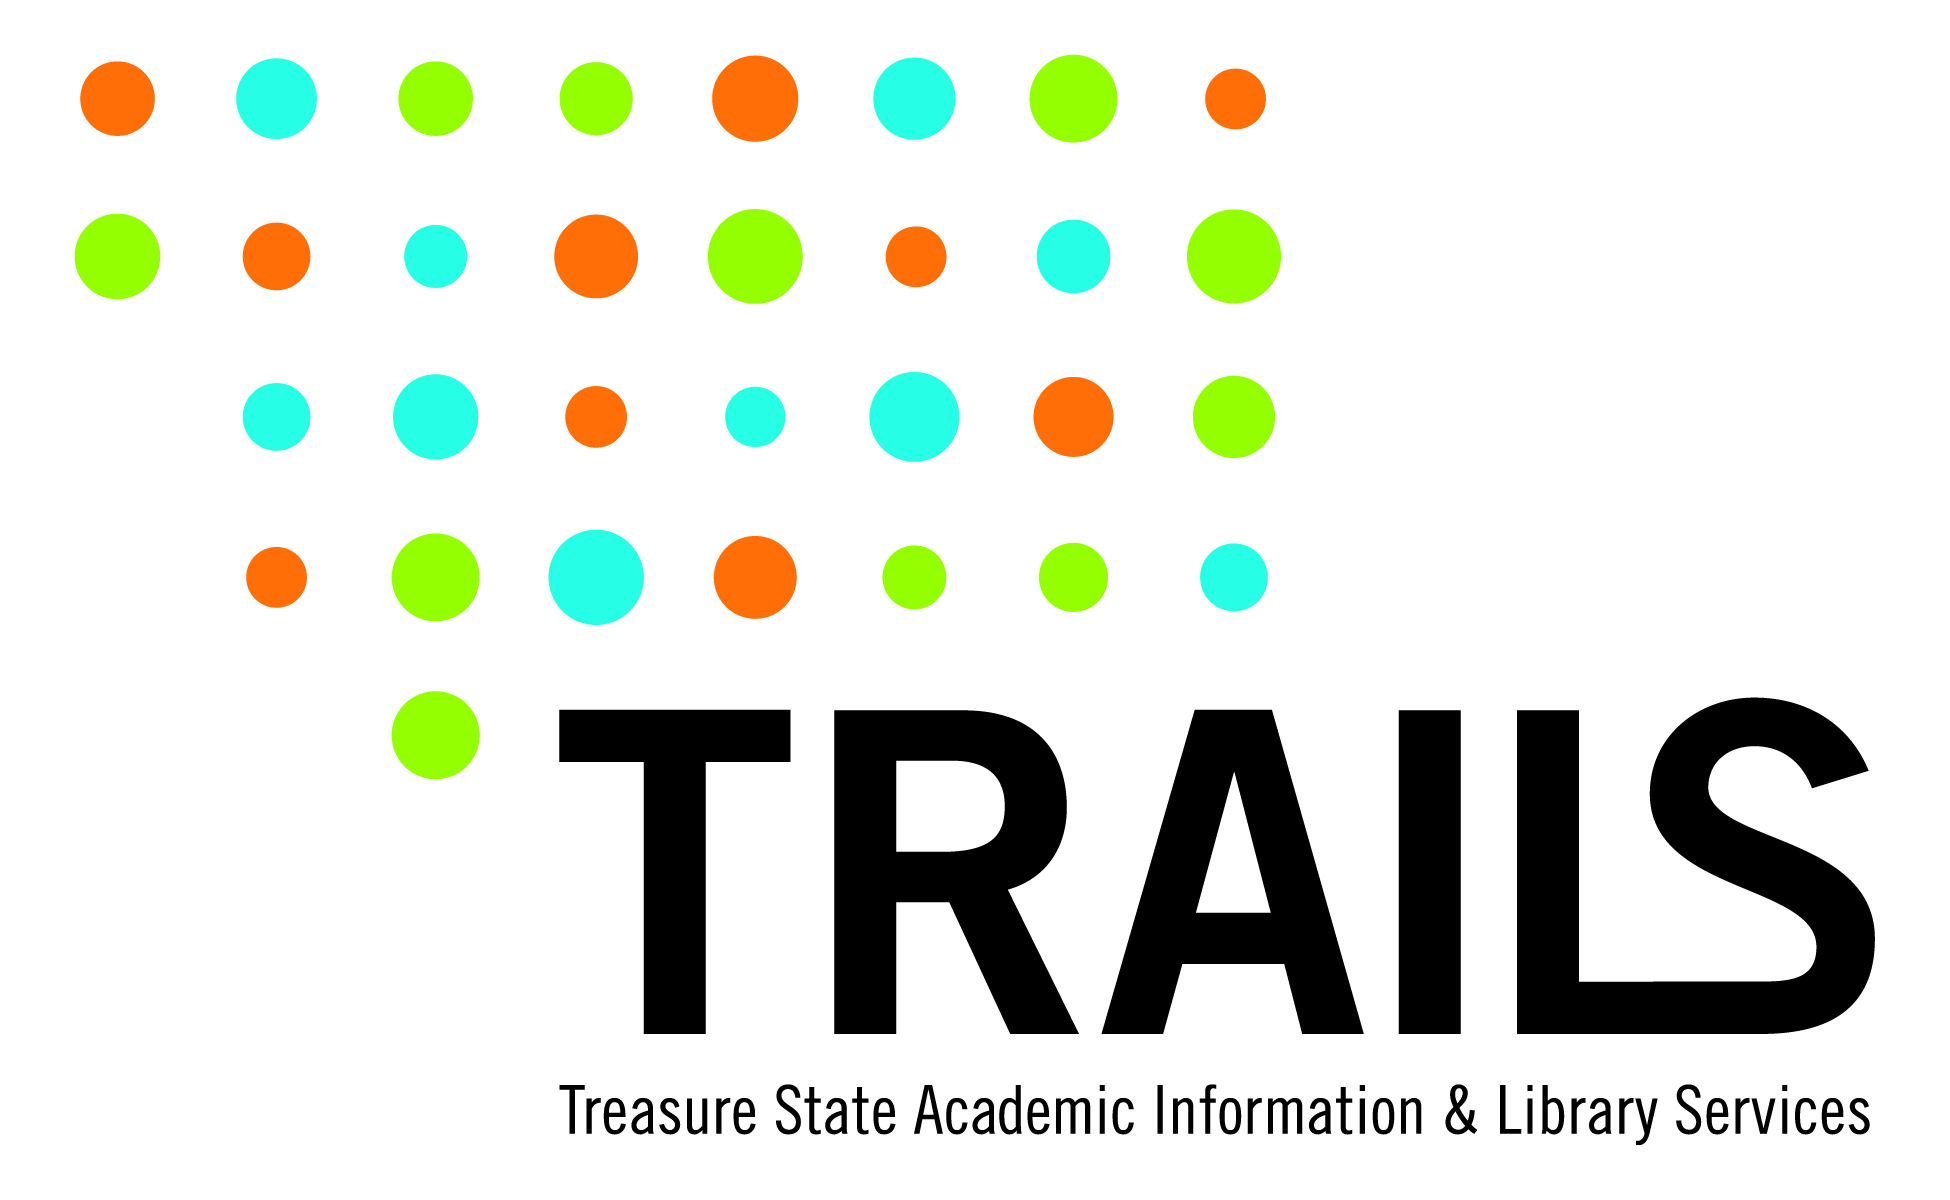 TRAILS logo